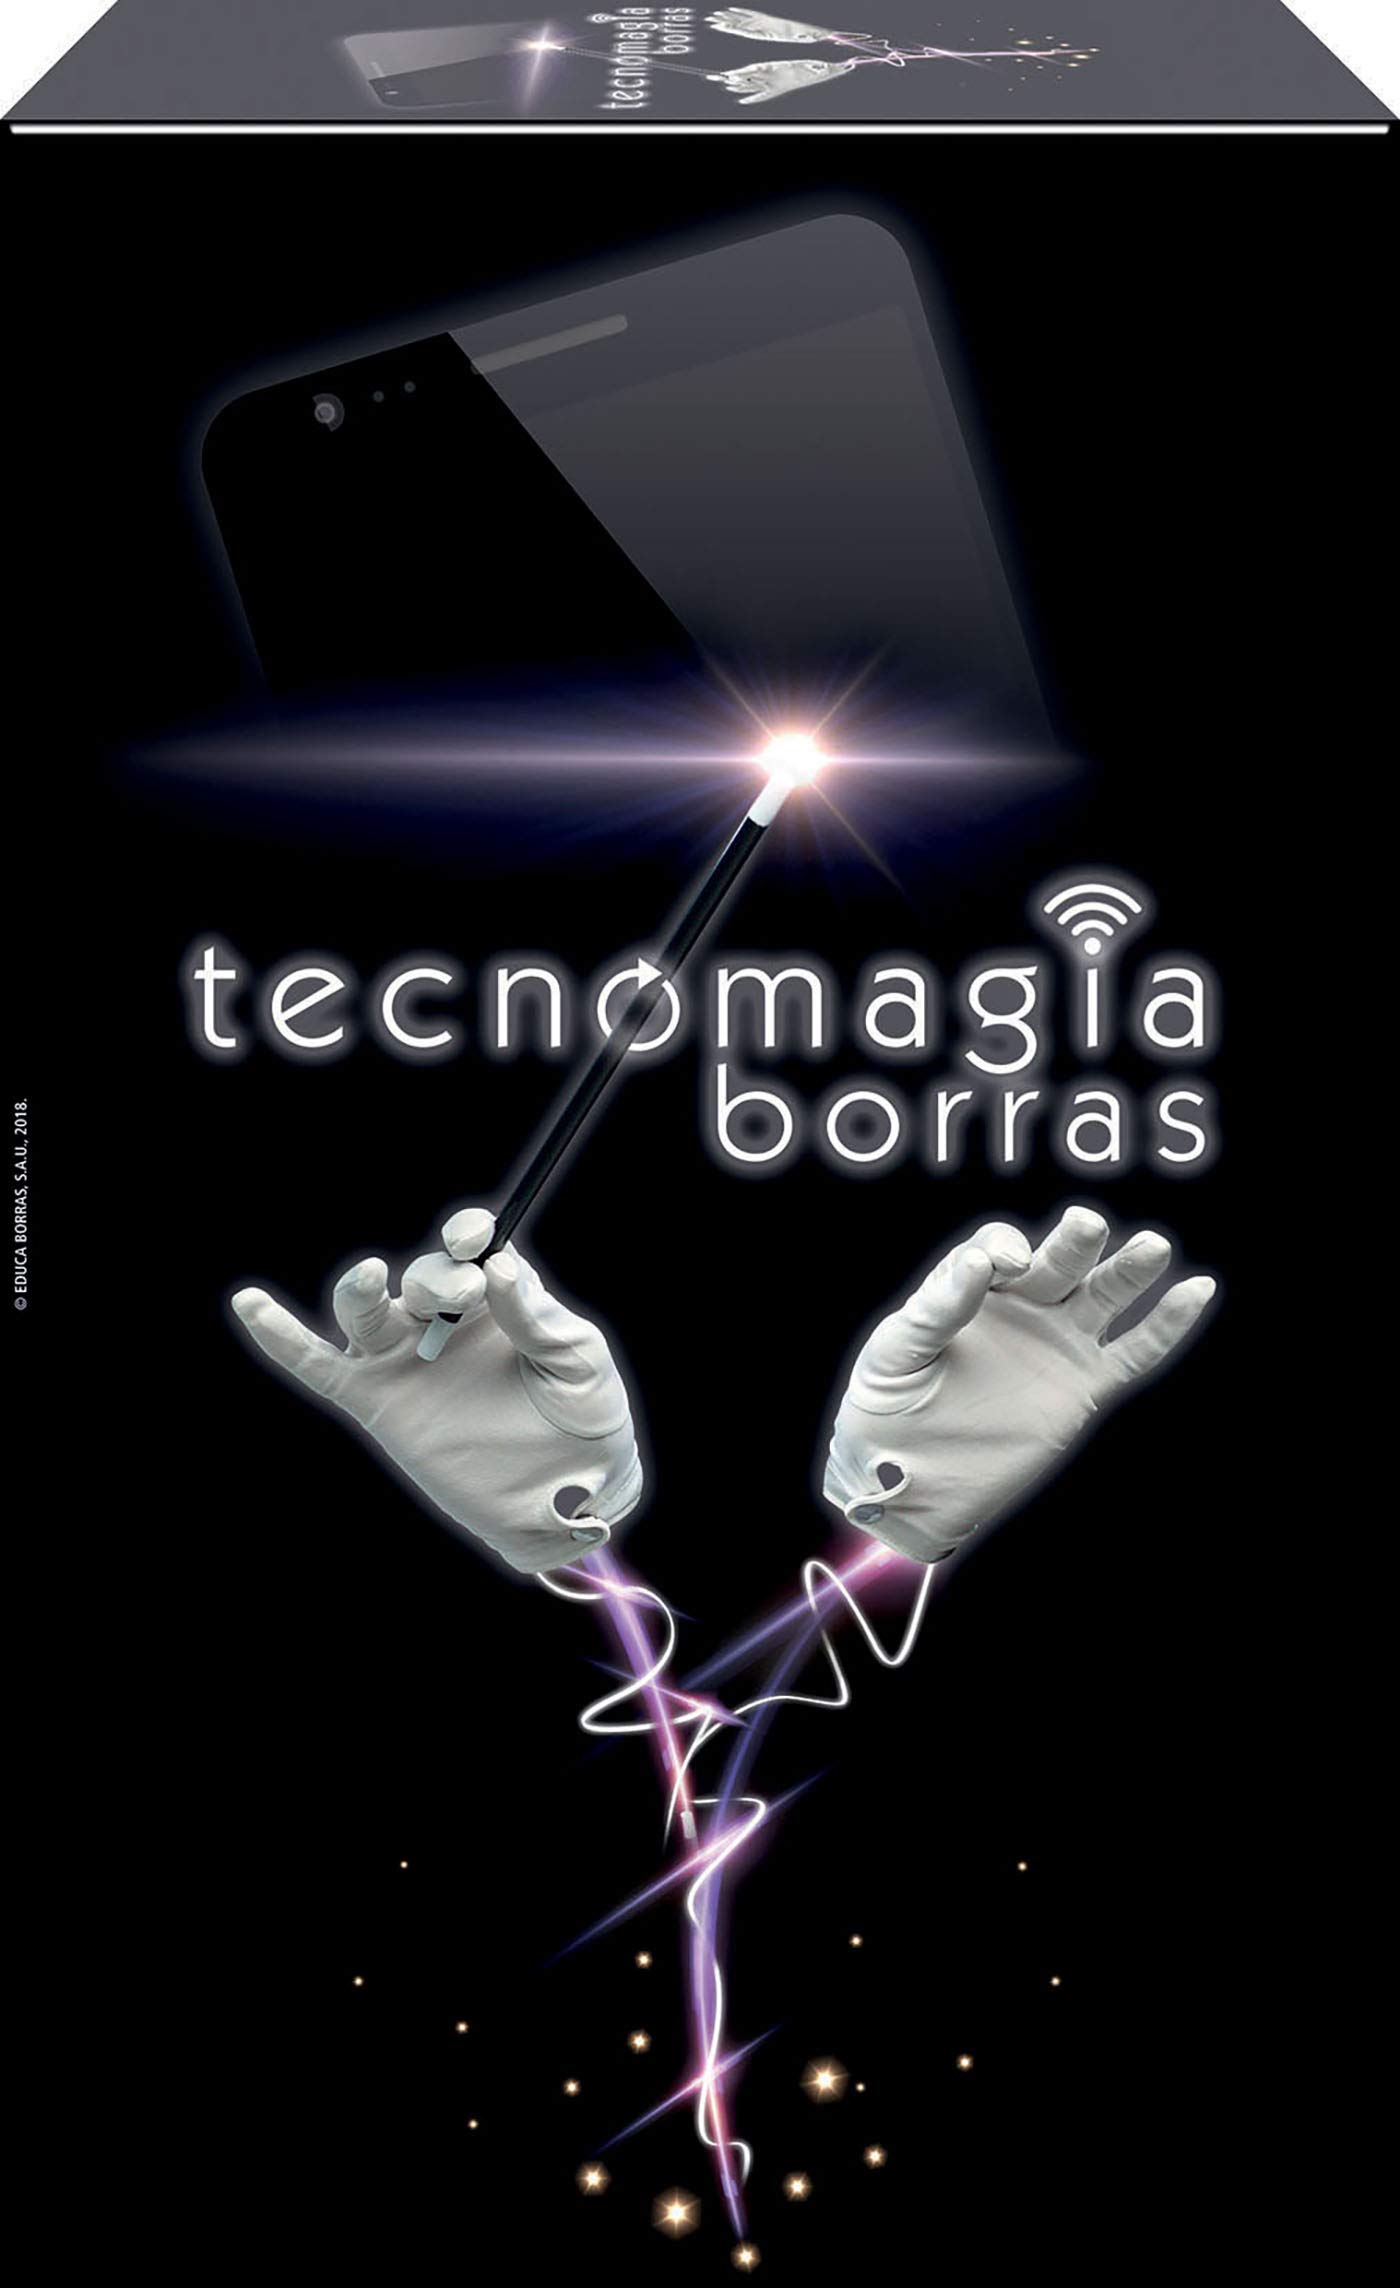 Borras 17912 Tecnomagia BorrasTecnomagia, Con diversos trucos magia. App exclusiva disponible en Android y IOS. A partir de, Einfarbig, One Size